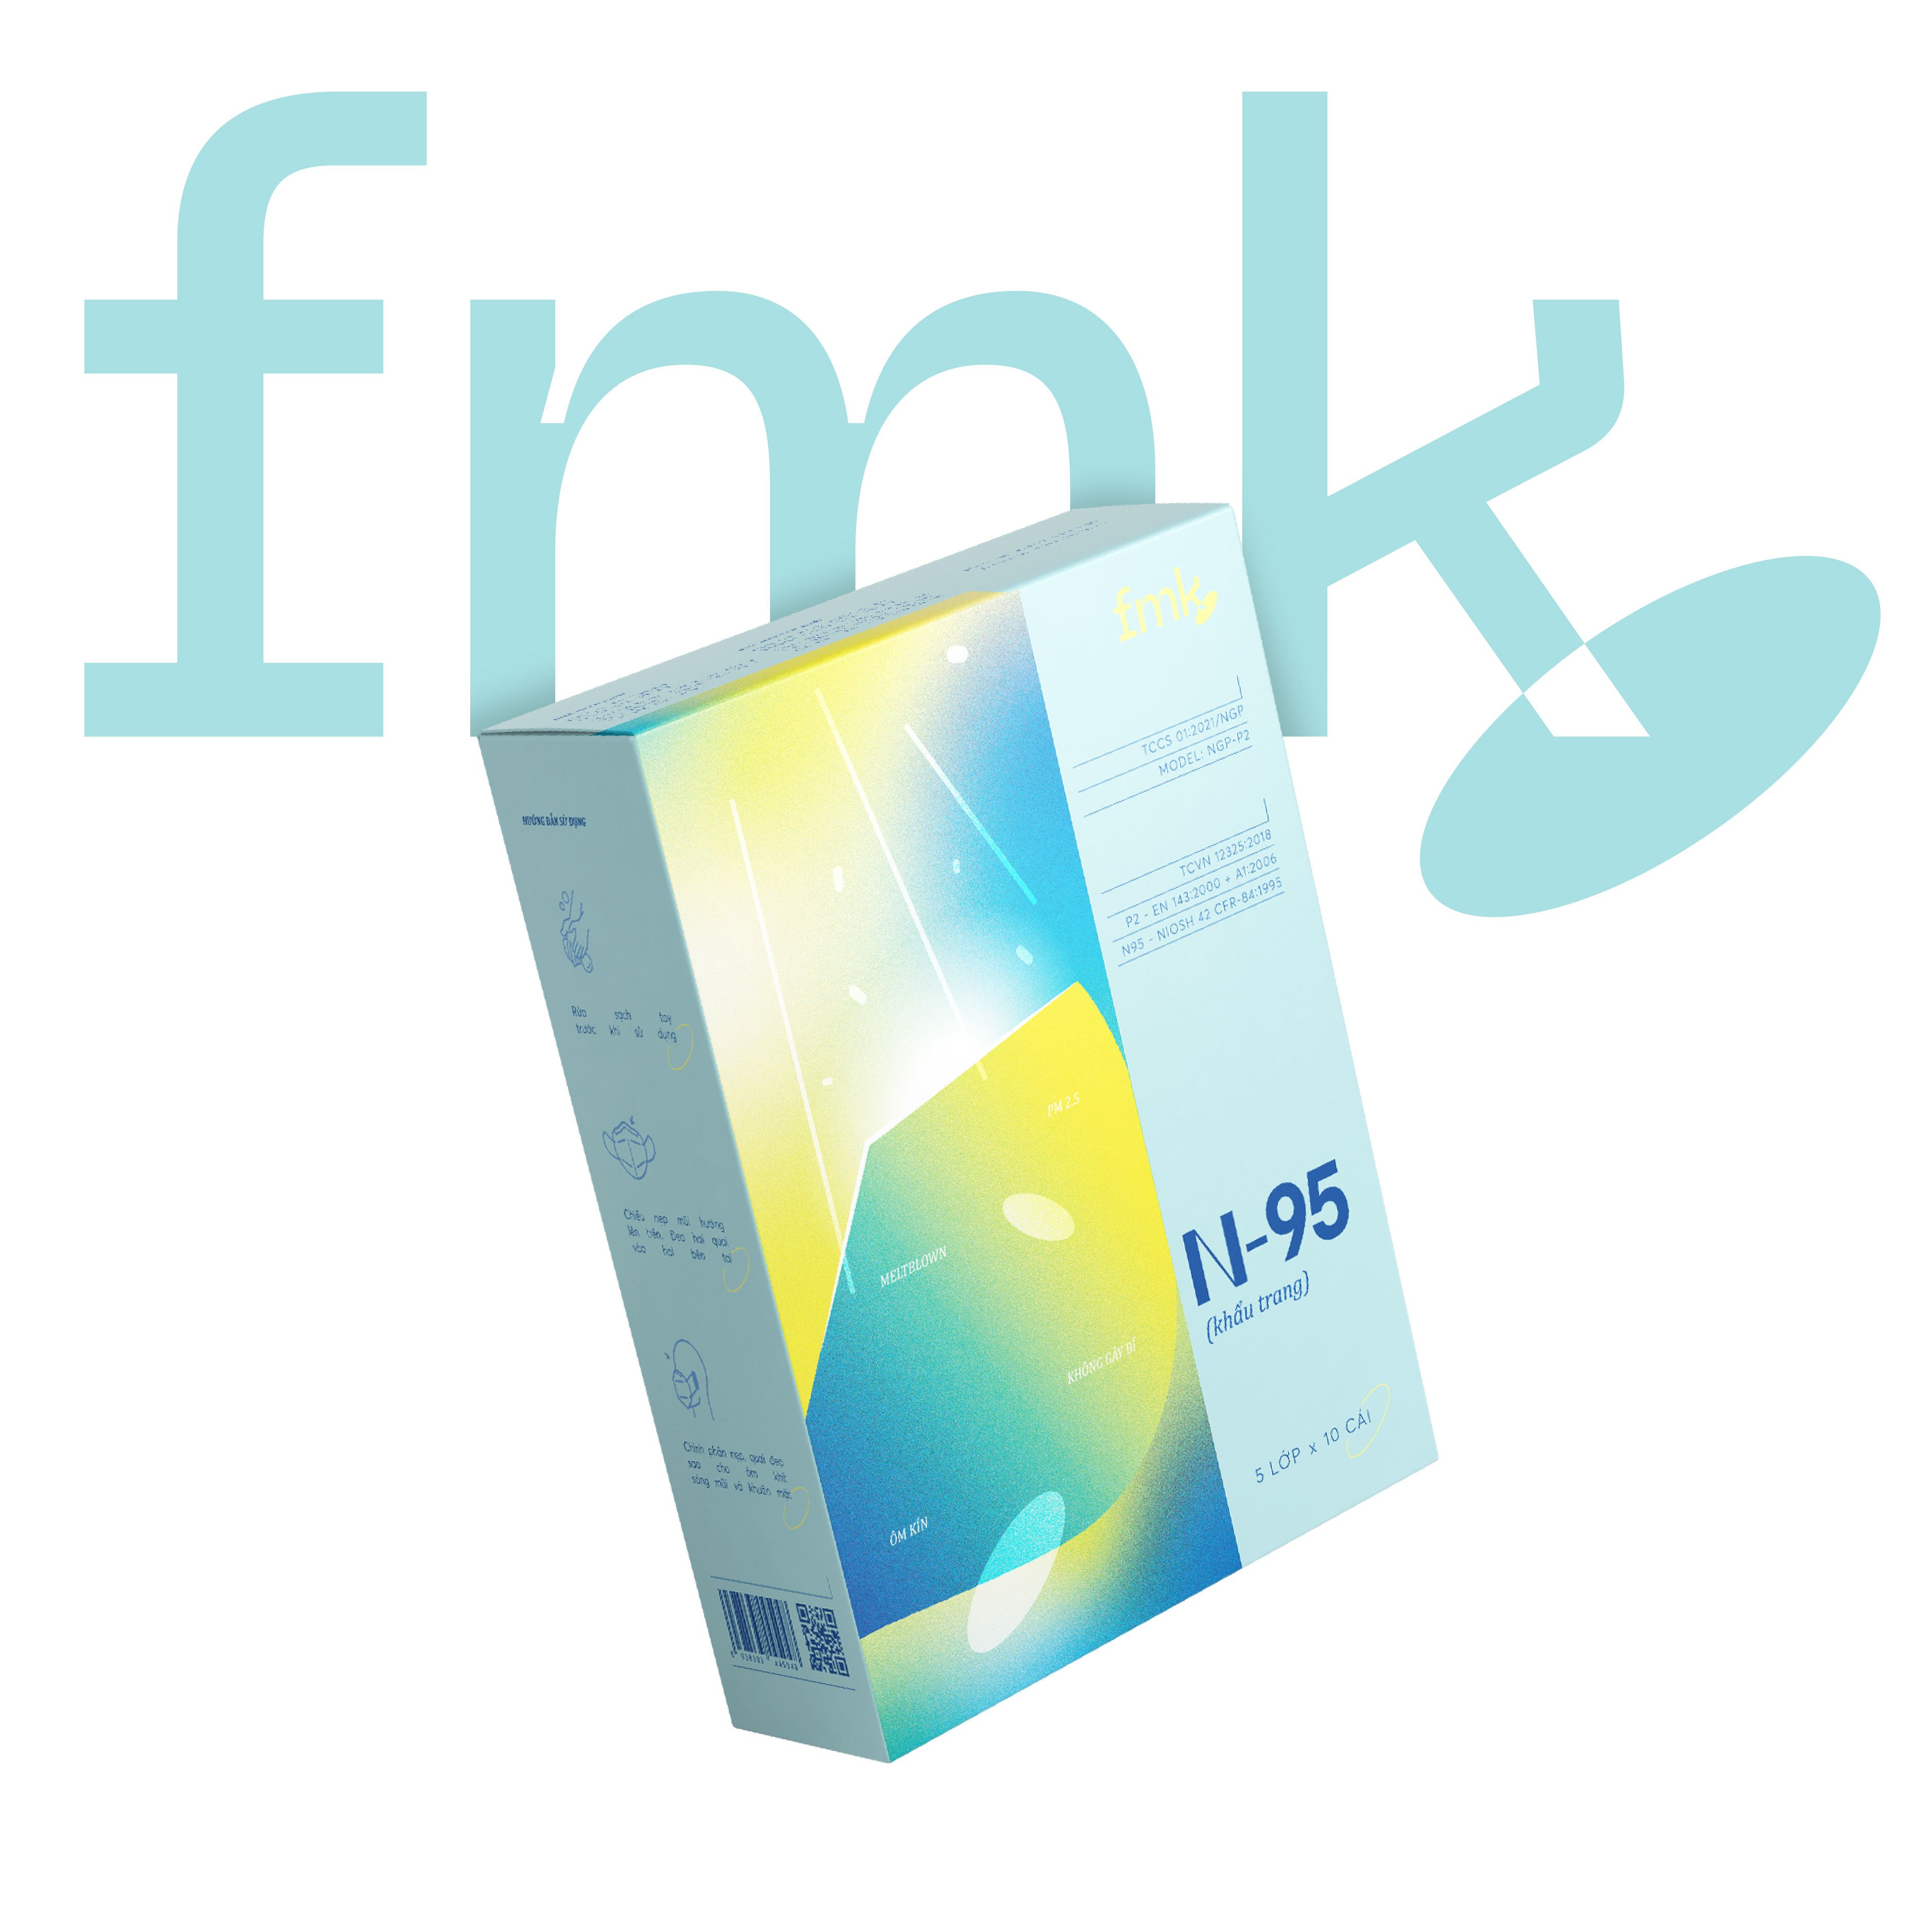 Khẩu trang N95 kháng khuẩn cao cấp - 5 lớp bảo vệ tối ưu - Thương hiệu FMK - Best Seller tại Nhật - Đạt tiêu chuẩn NIOSH 42 CFR 84